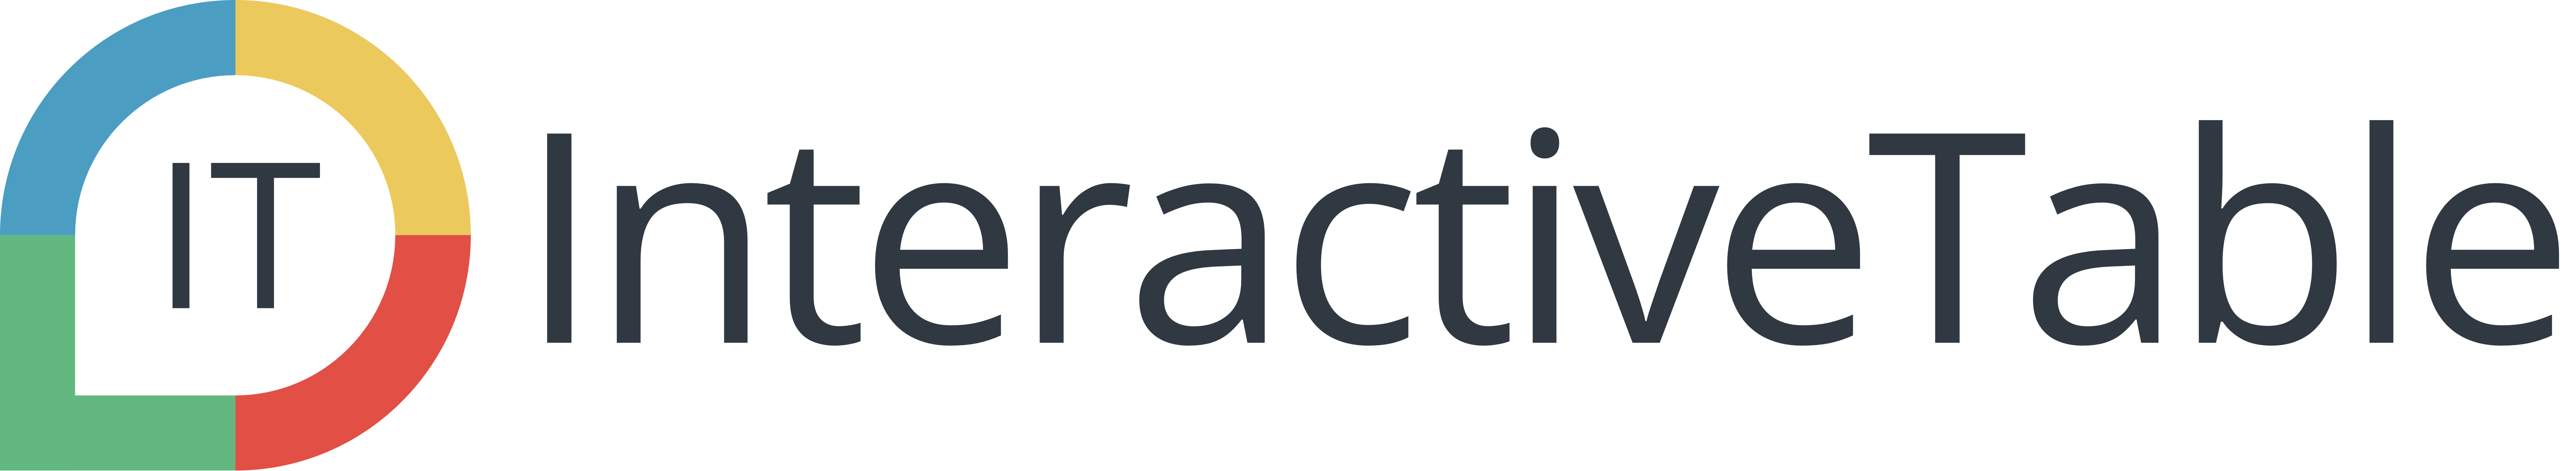 InteractiveTable Logo